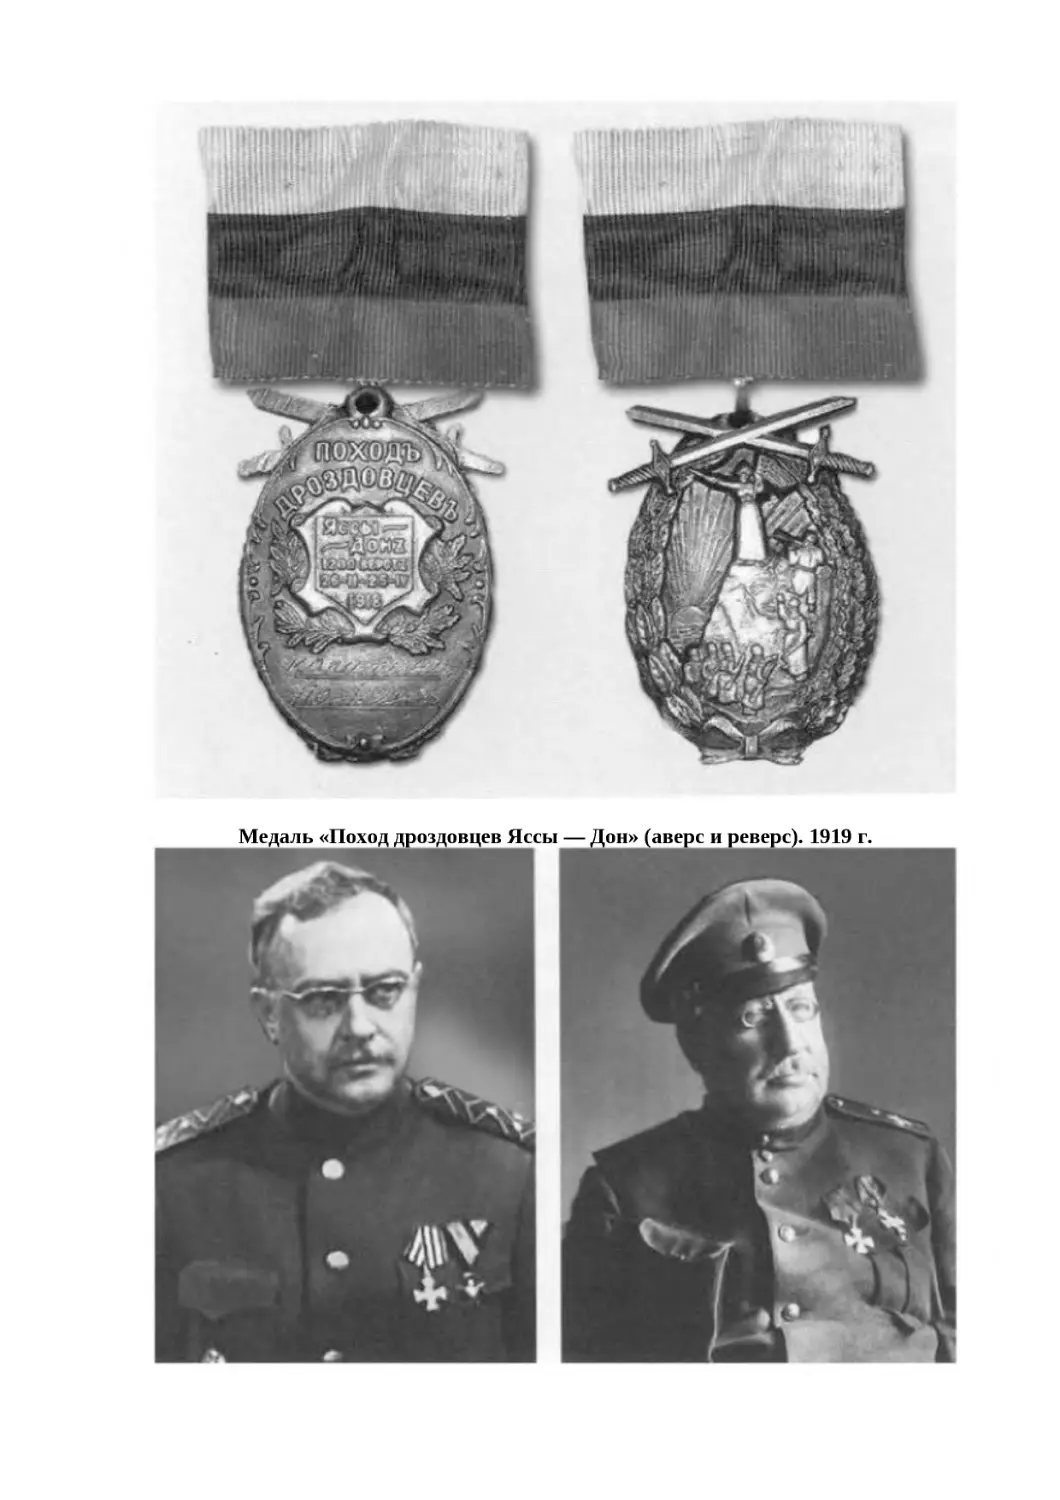 "
﻿Медаль «Поход дроздовцев Яссы — Дон» øаверс и реверсù. 1919 г
"